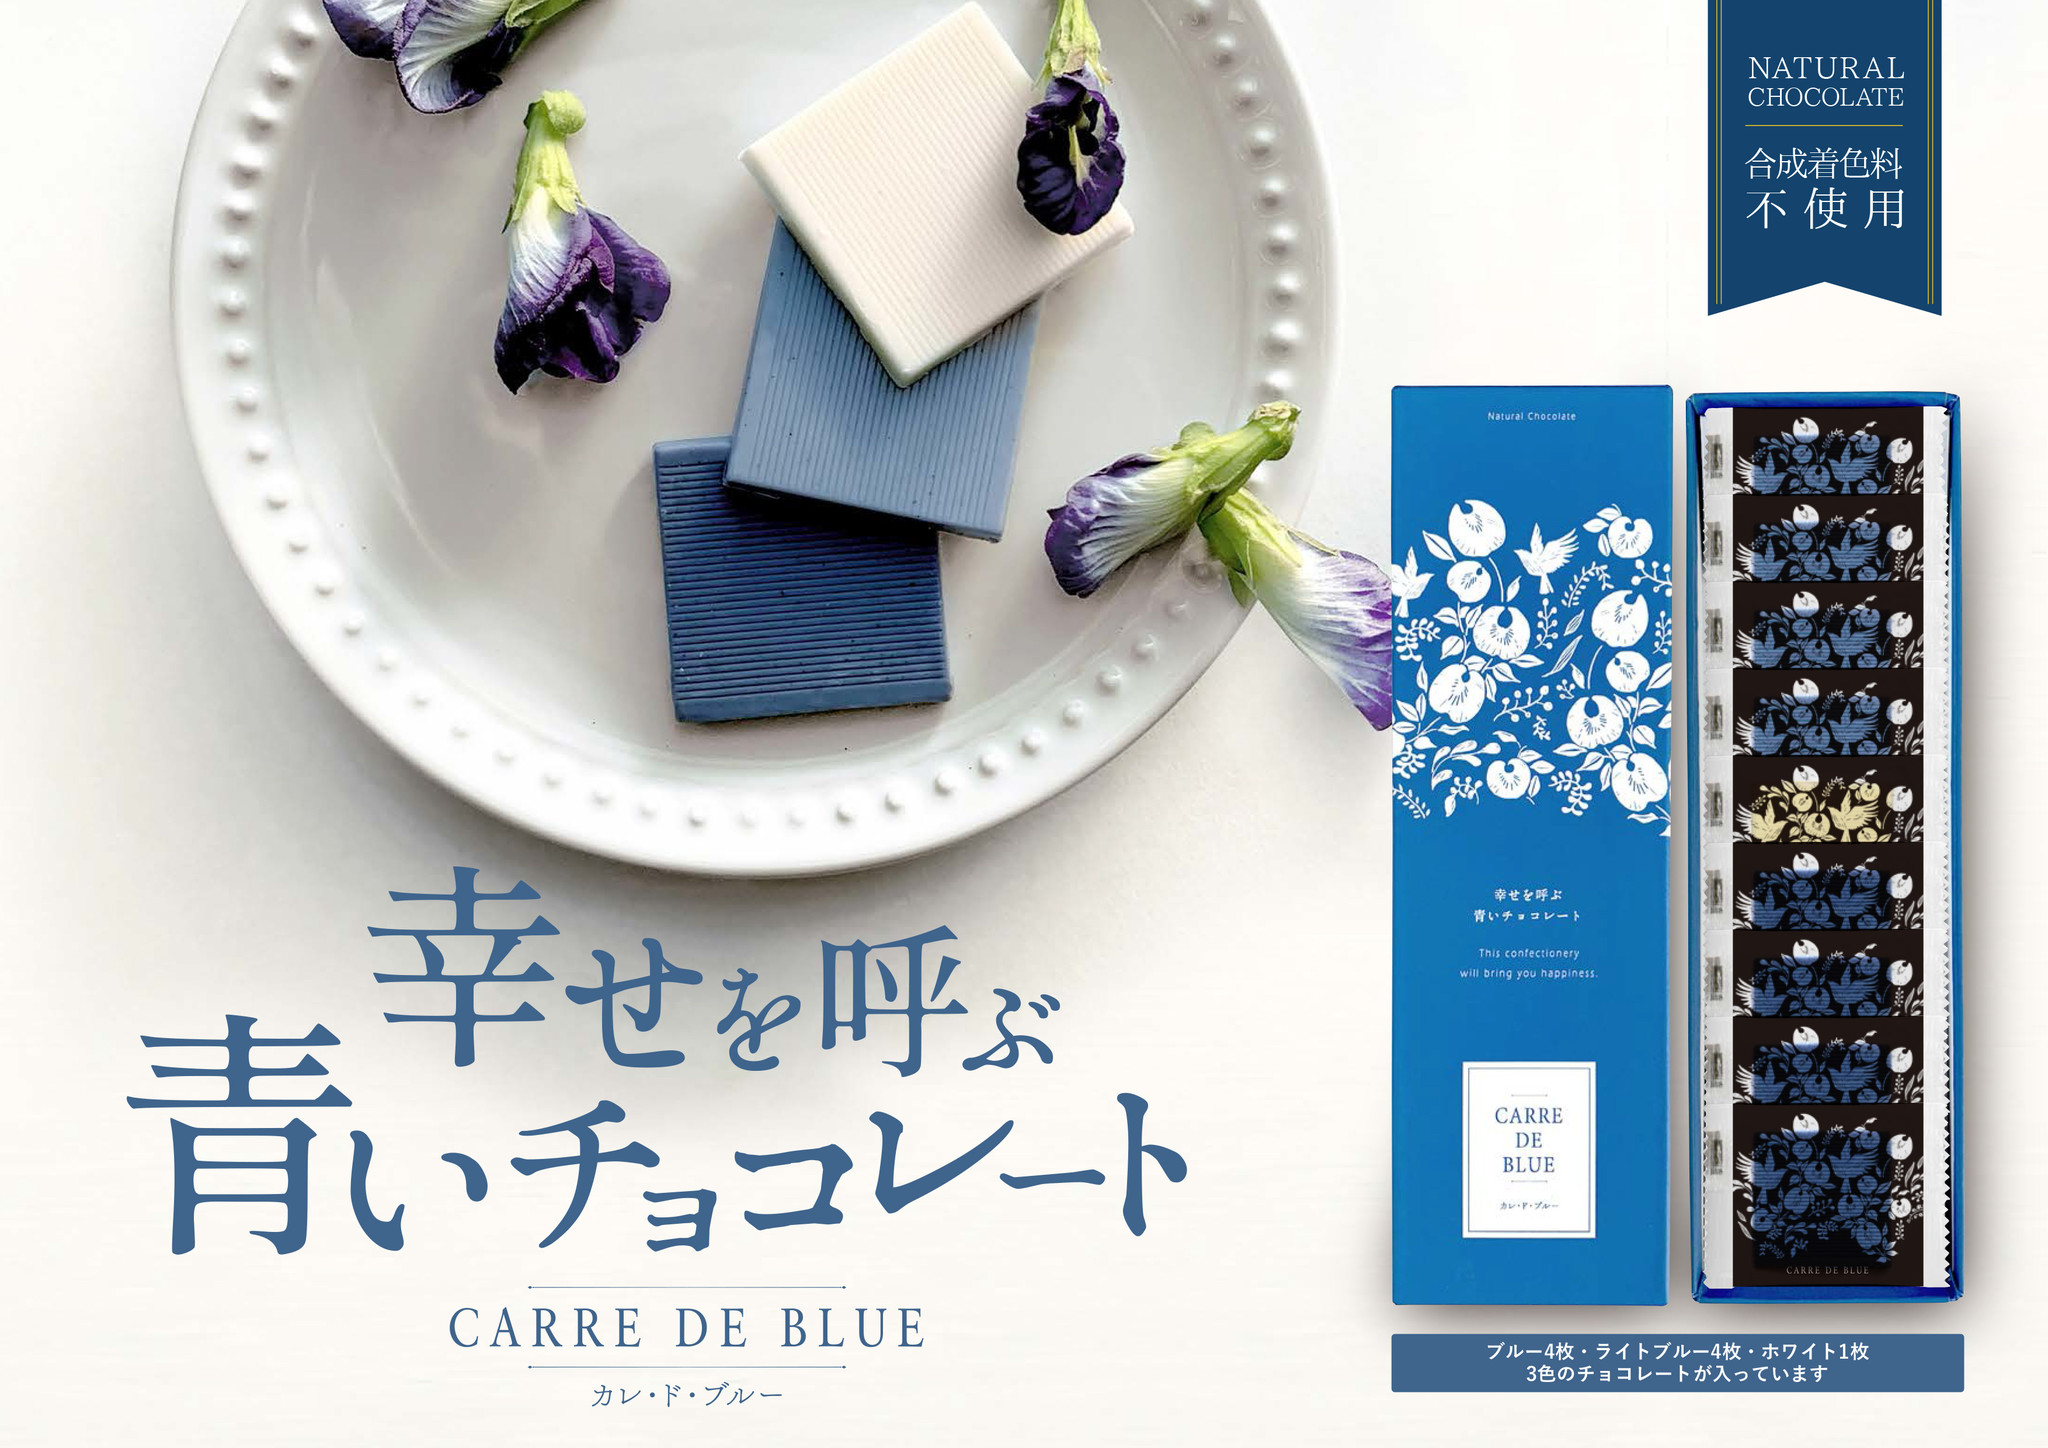 幸せを呼ぶ青いチョコレートシリーズ 安心 安全 天然の青いハーブを使ったチョコレートのご案内 今年のギフトは 青 と フォトジェニック で特別感を 日本アドバンストアグリ株式会社のプレスリリース